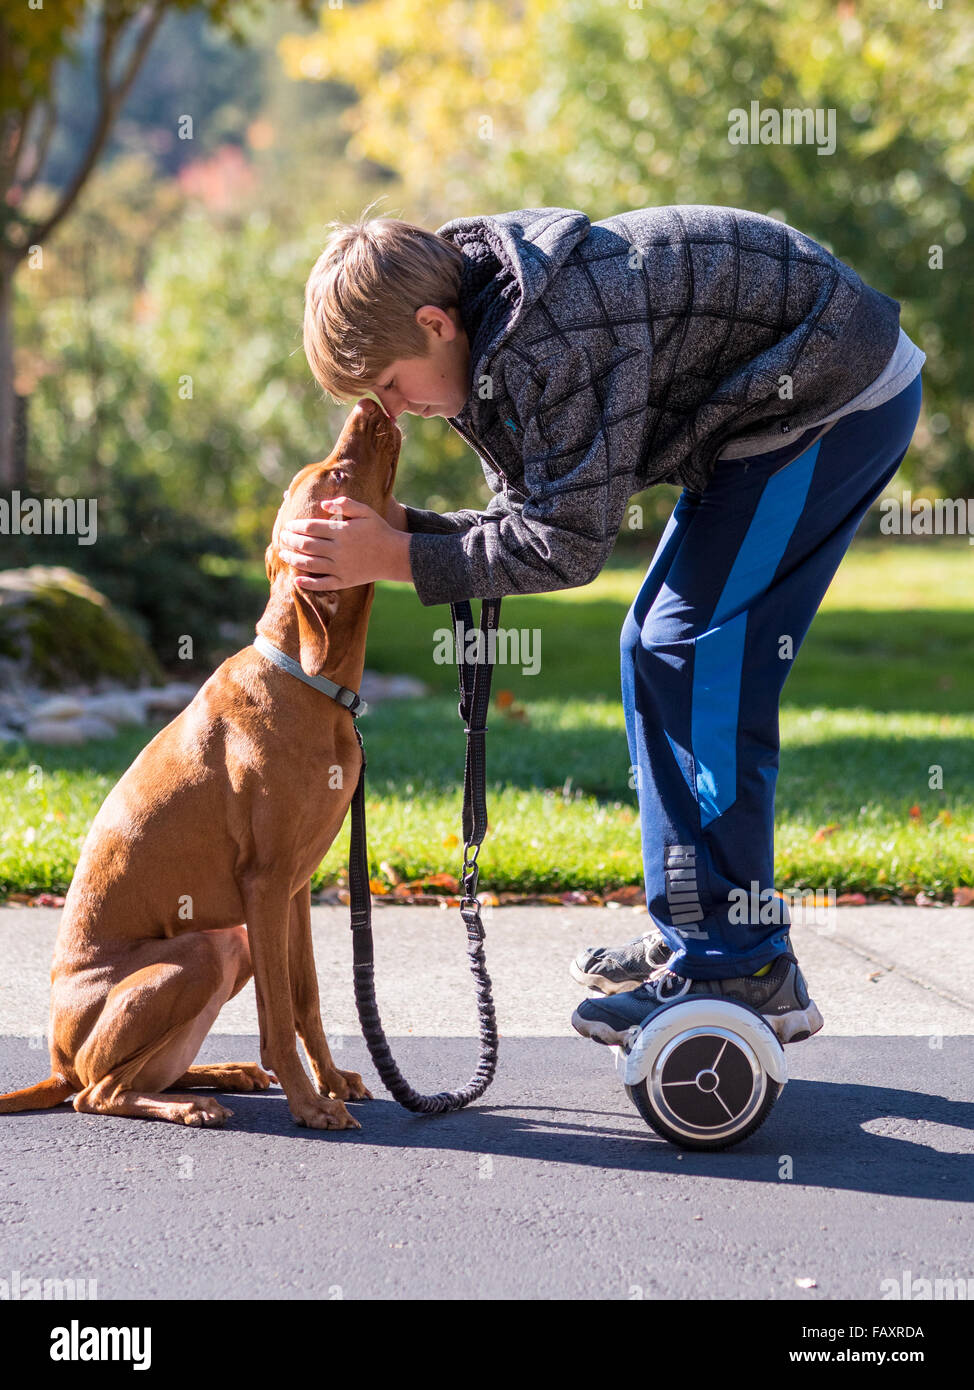 REDDING, CA, EE.UU., Noviembre 24, 2015: Adolescente camina perro mediante auto-equilibrado de dos ruedas, scooters, también llamado hoverboard. Foto de stock